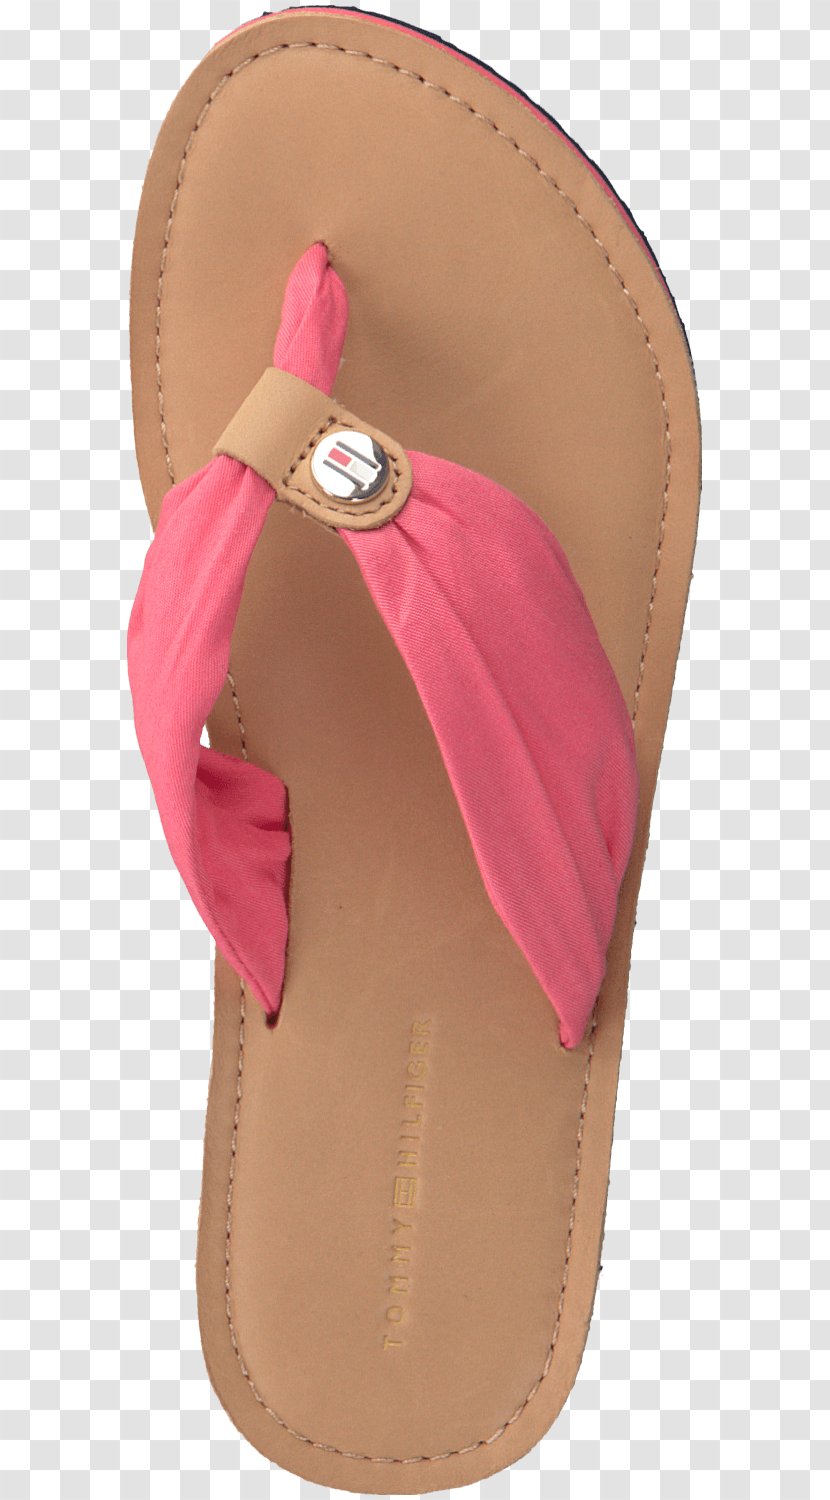 Flip-flops Tommy Hilfiger Shoe Sandal Leather - Bied Transparent PNG